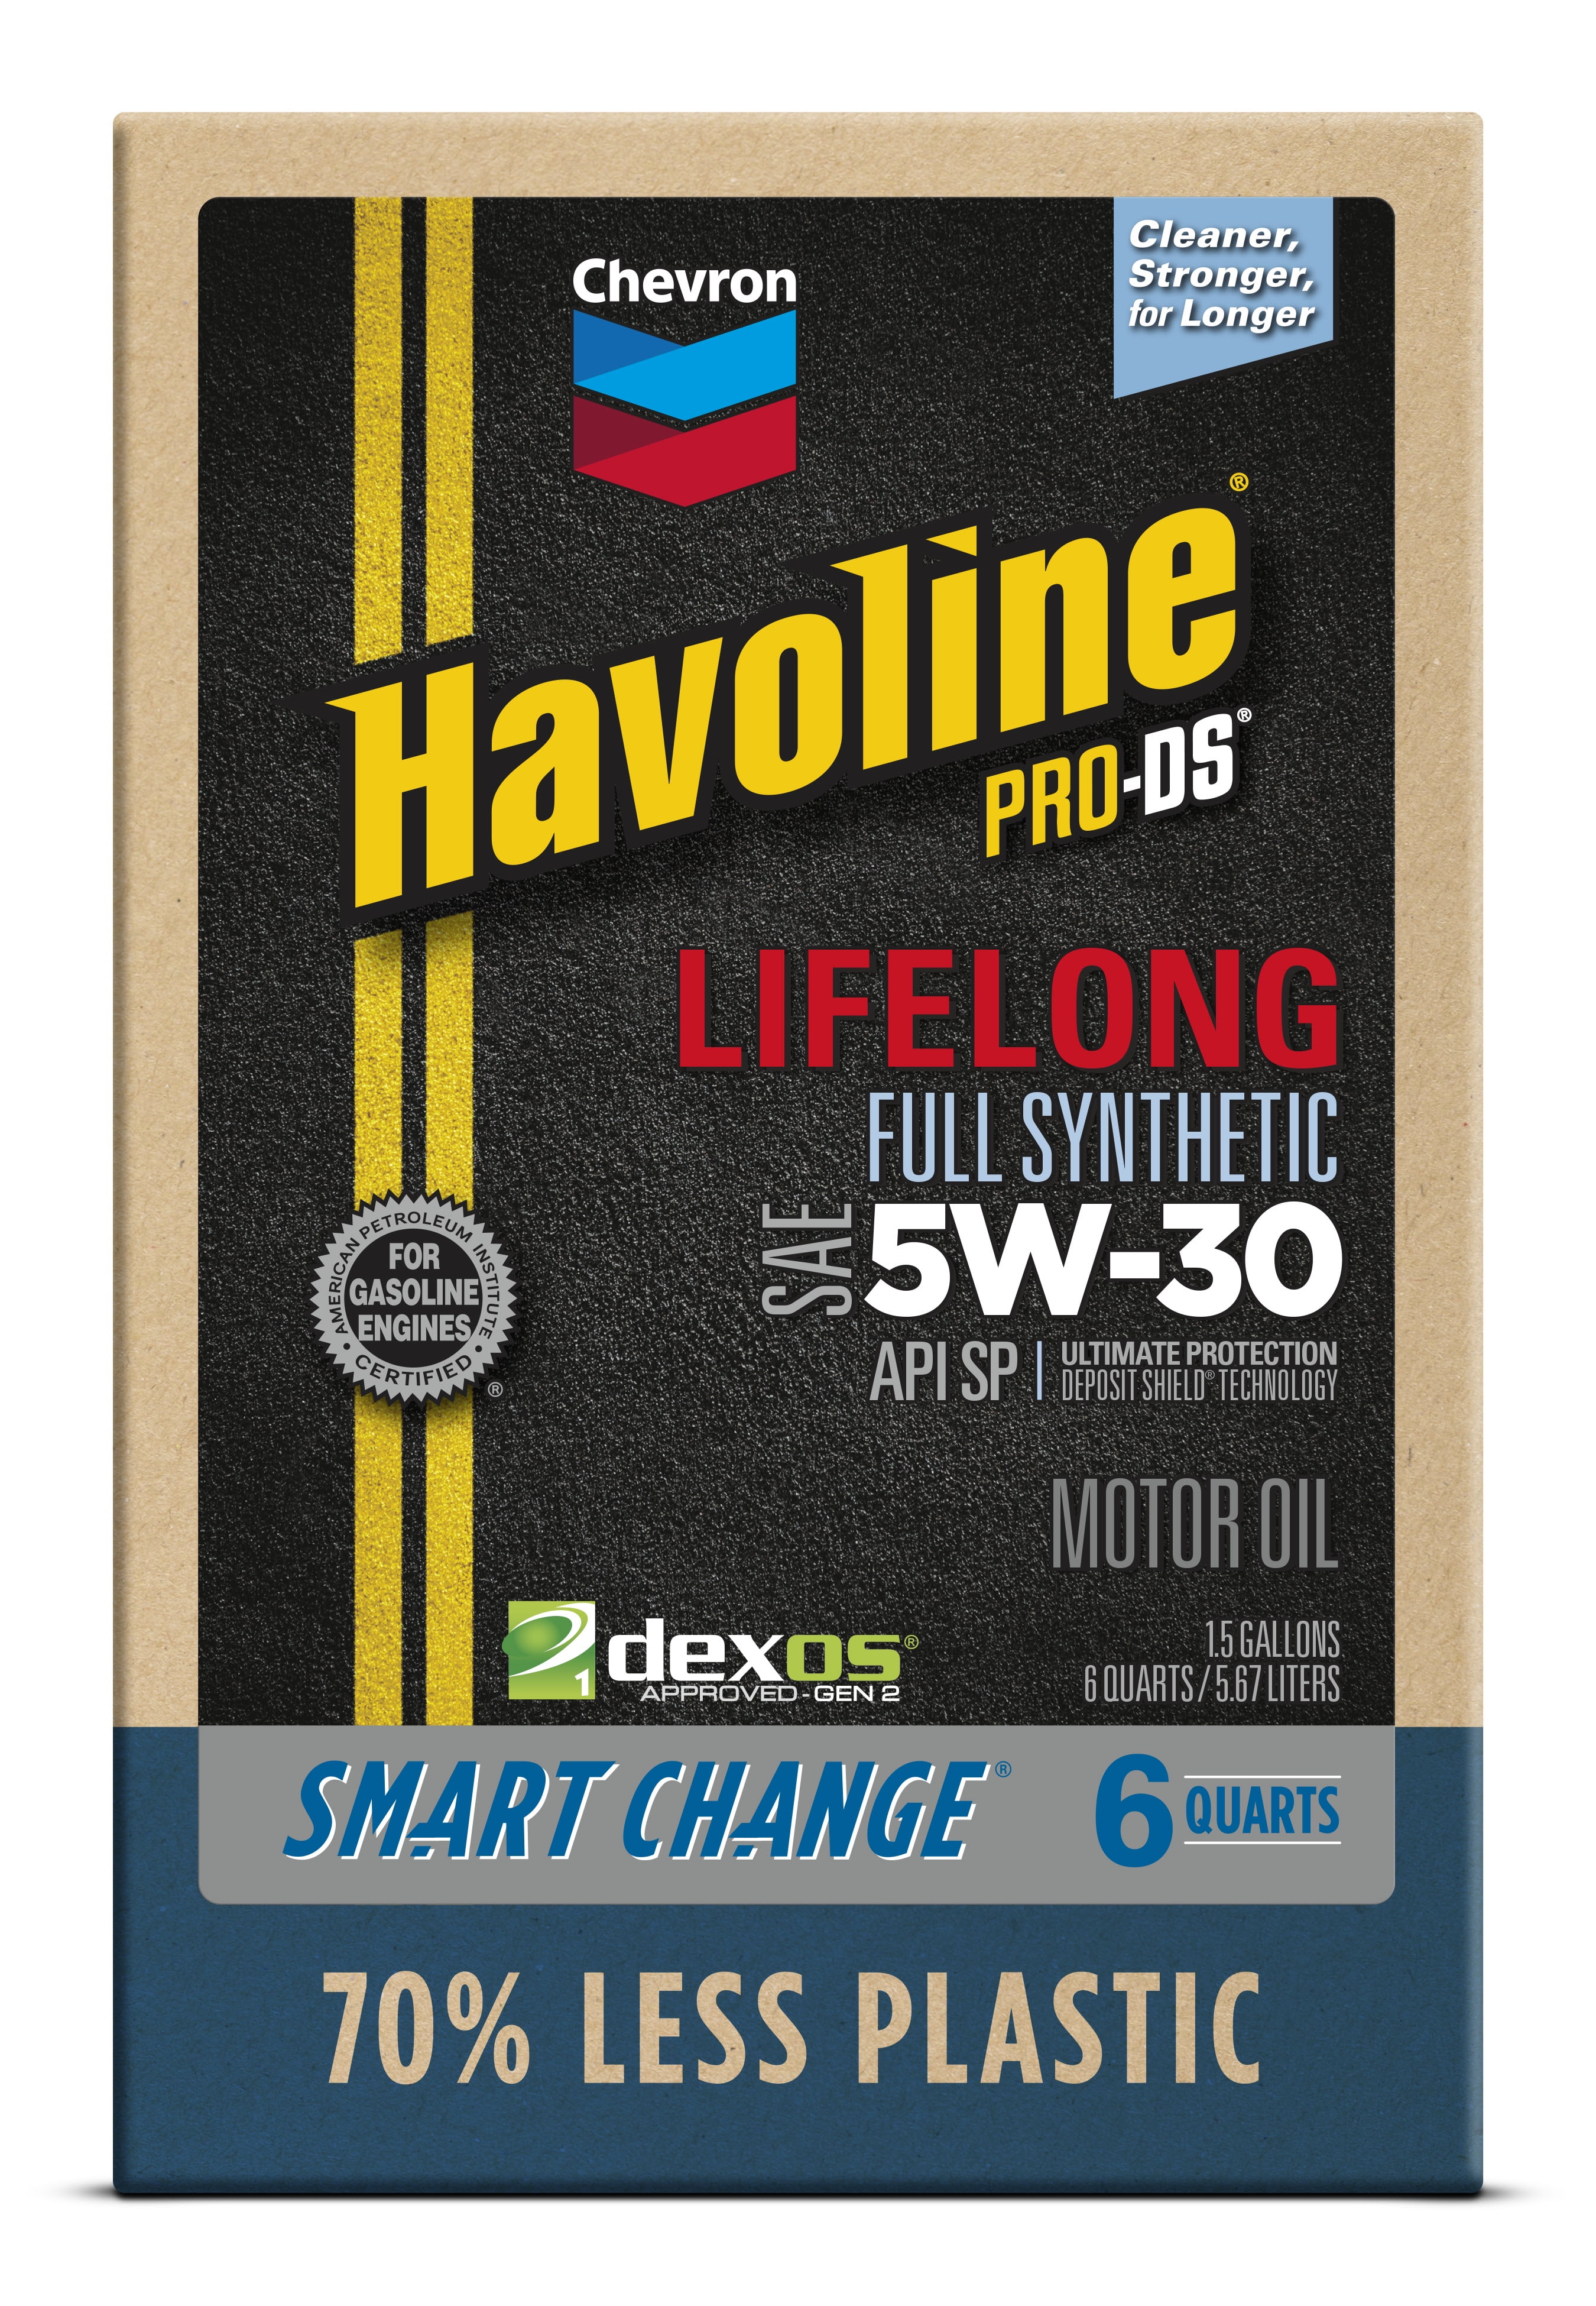 Chevron Havoline Lifelong Full Synthetic Motor Oil 5W-30, 6 Quart Smart Change Box